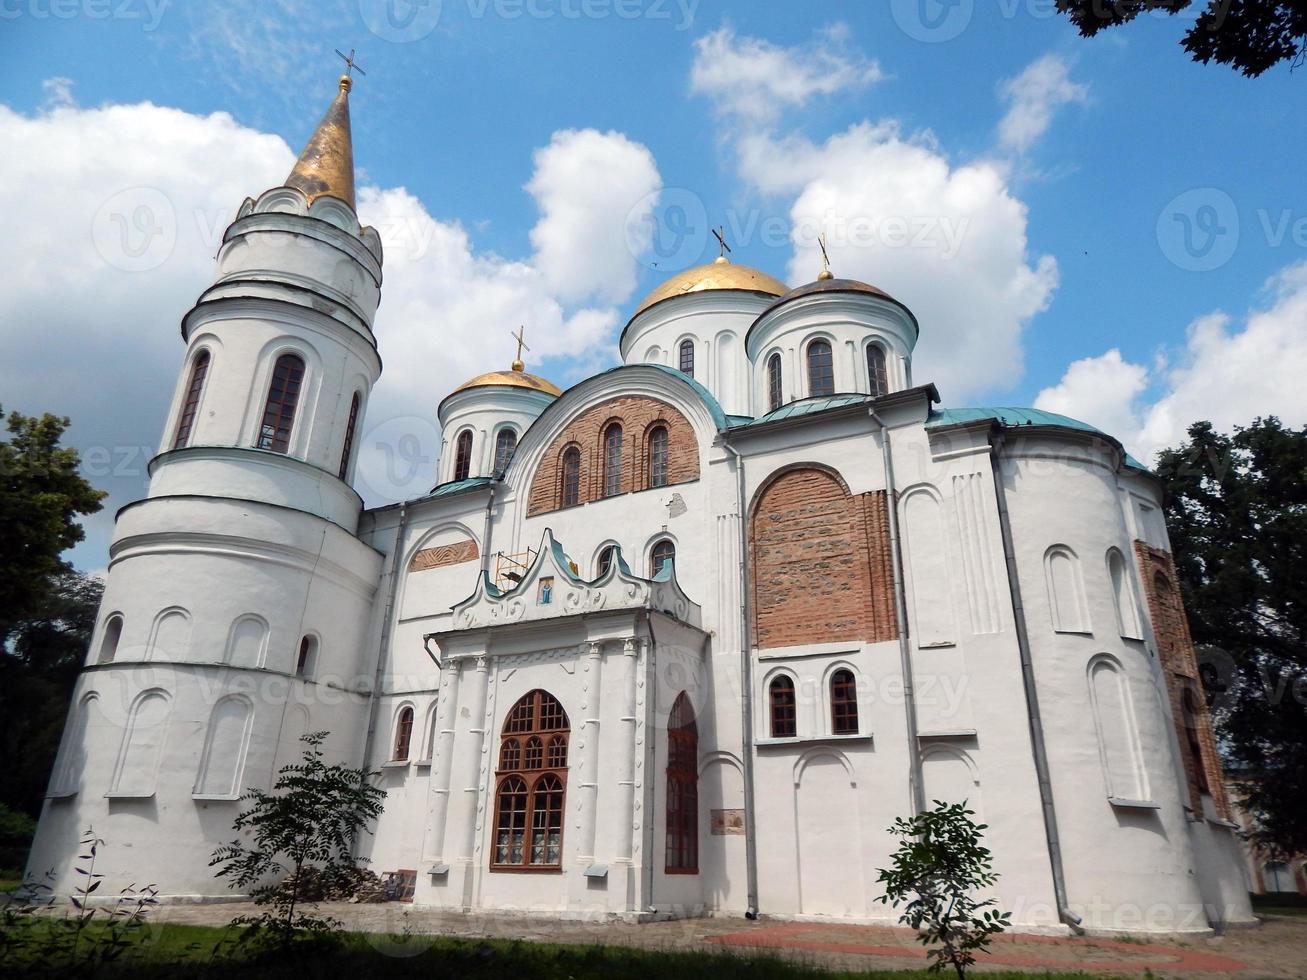 arquitetura medieval do barroco ucraniano em chernigov foto